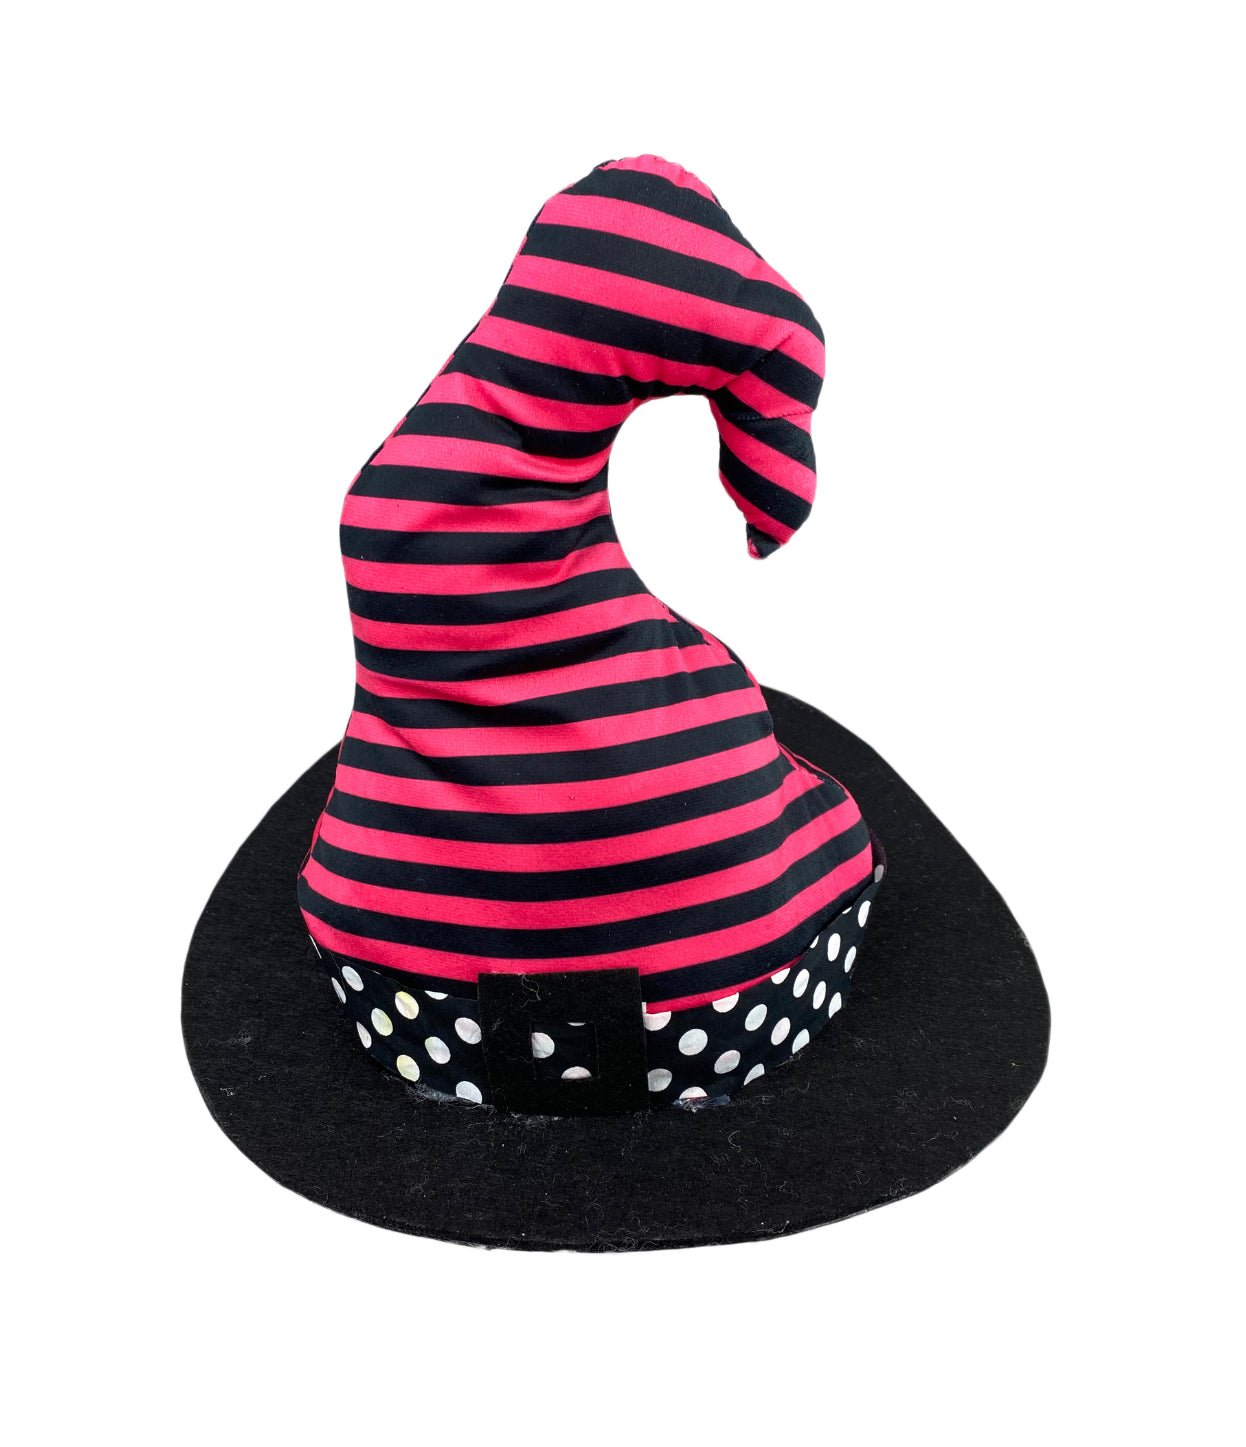 Plush Witch hat black and hot pink - Greenery MarketSeasonal & Holiday Decorations56552BTBK